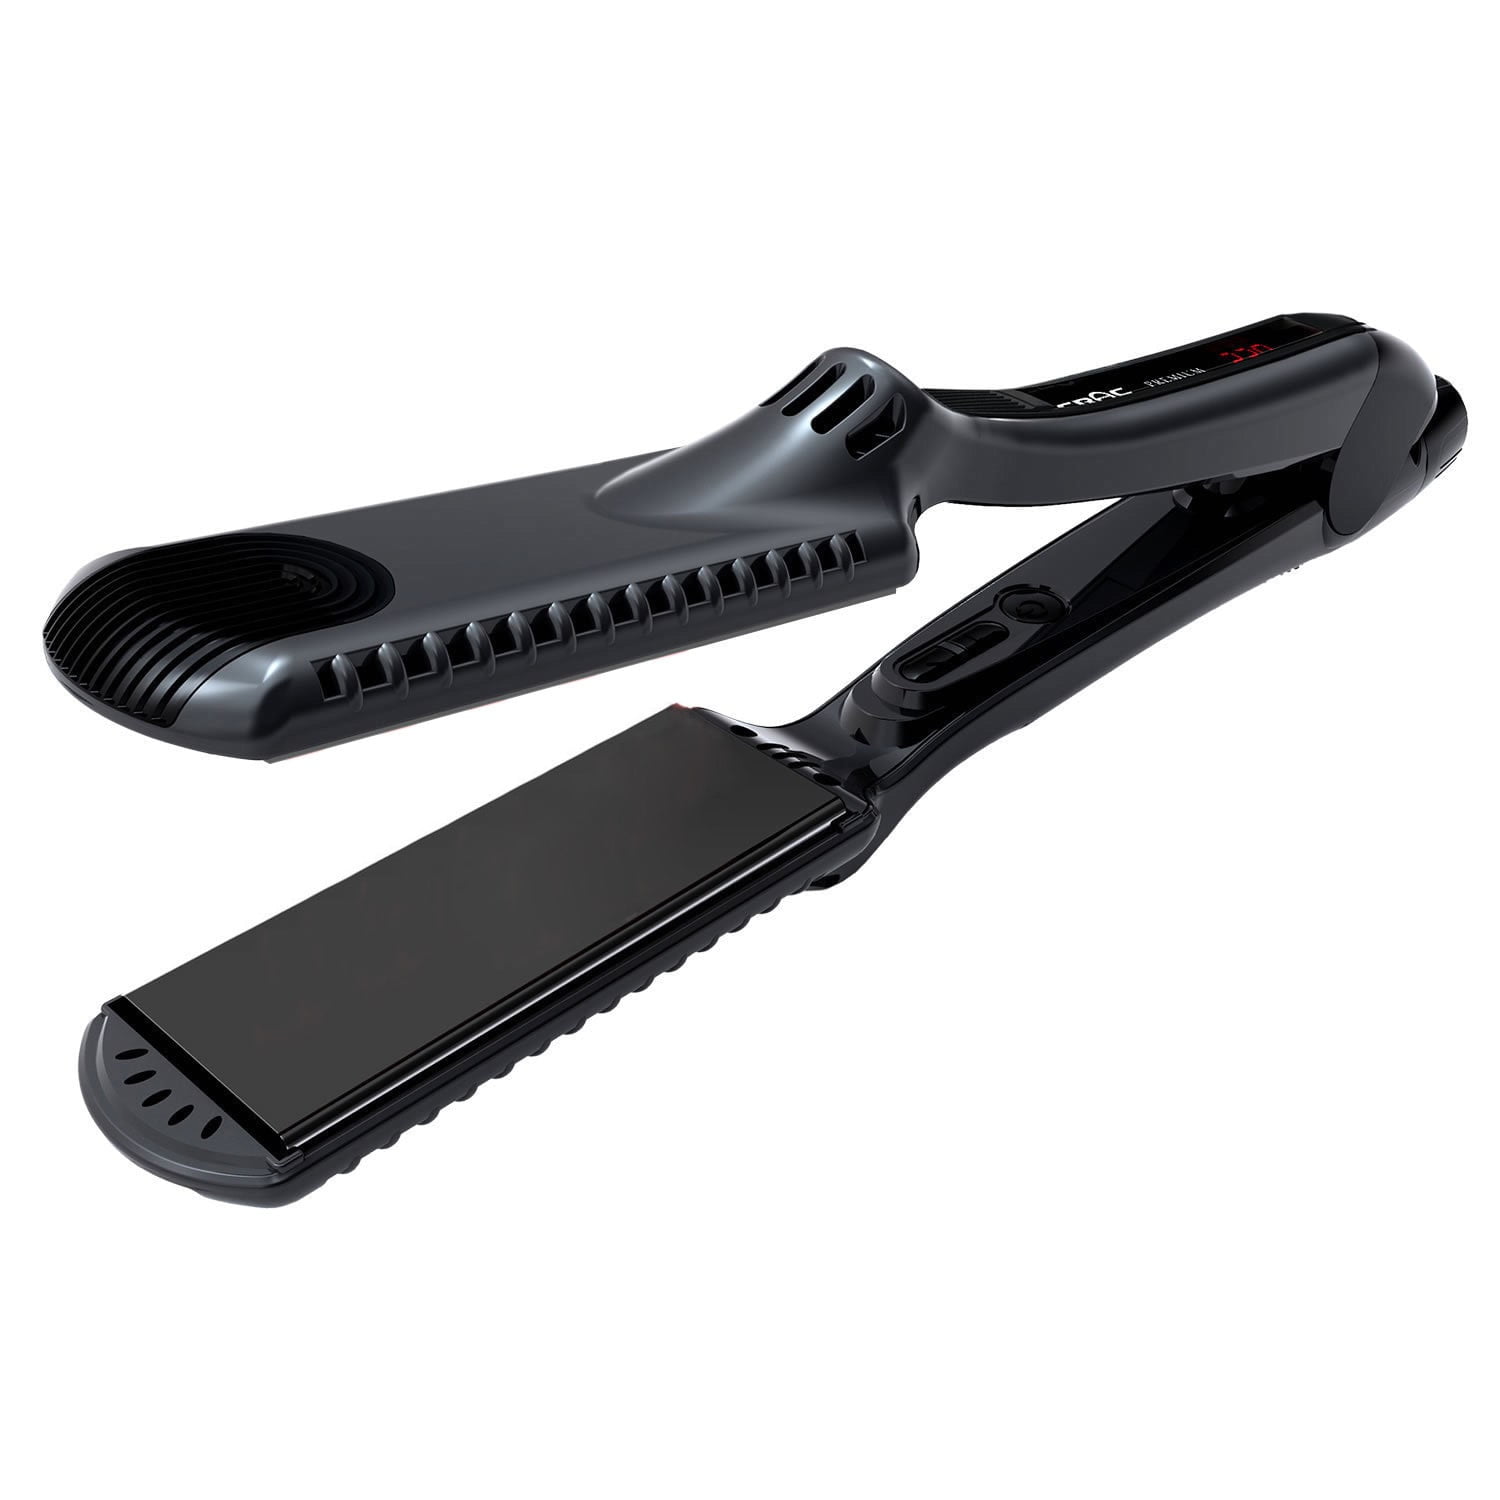 Croc Premium (INFRARED) Titanium Hair Straightening Flat Iron, Black, 1 ...